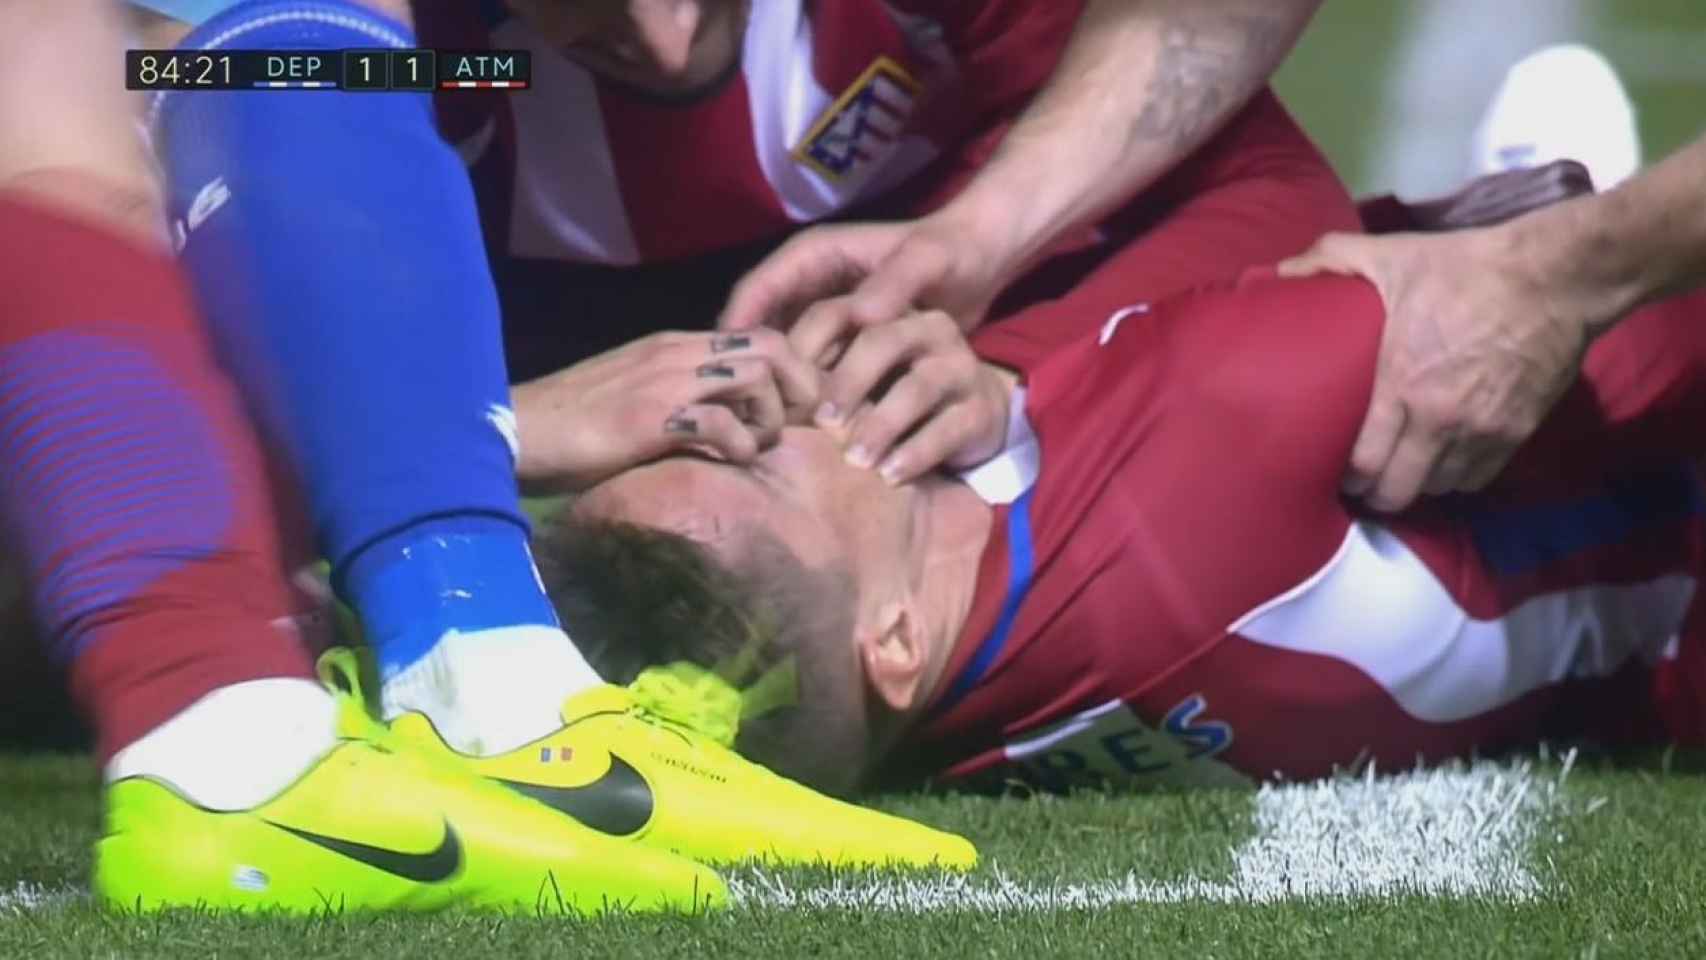 El delantero del Atlético se tragó la lengua y fue atendido de inmediato sobre el césped. / Fuente: TV